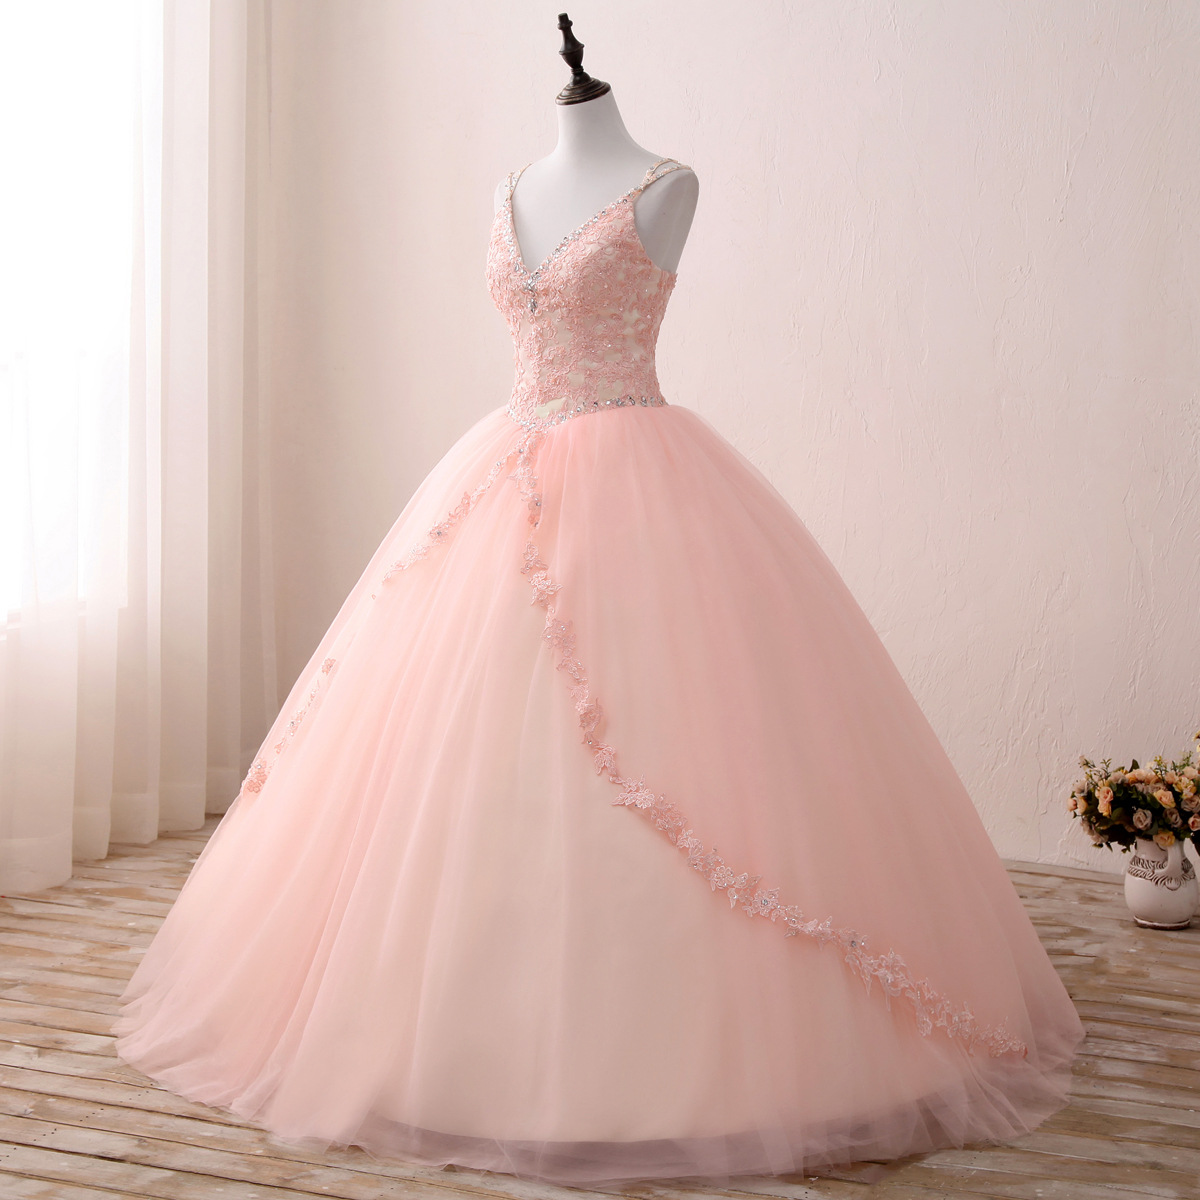 Bridal sling diamond high waist wedding dress evening party banquet wedding dress kpp0446